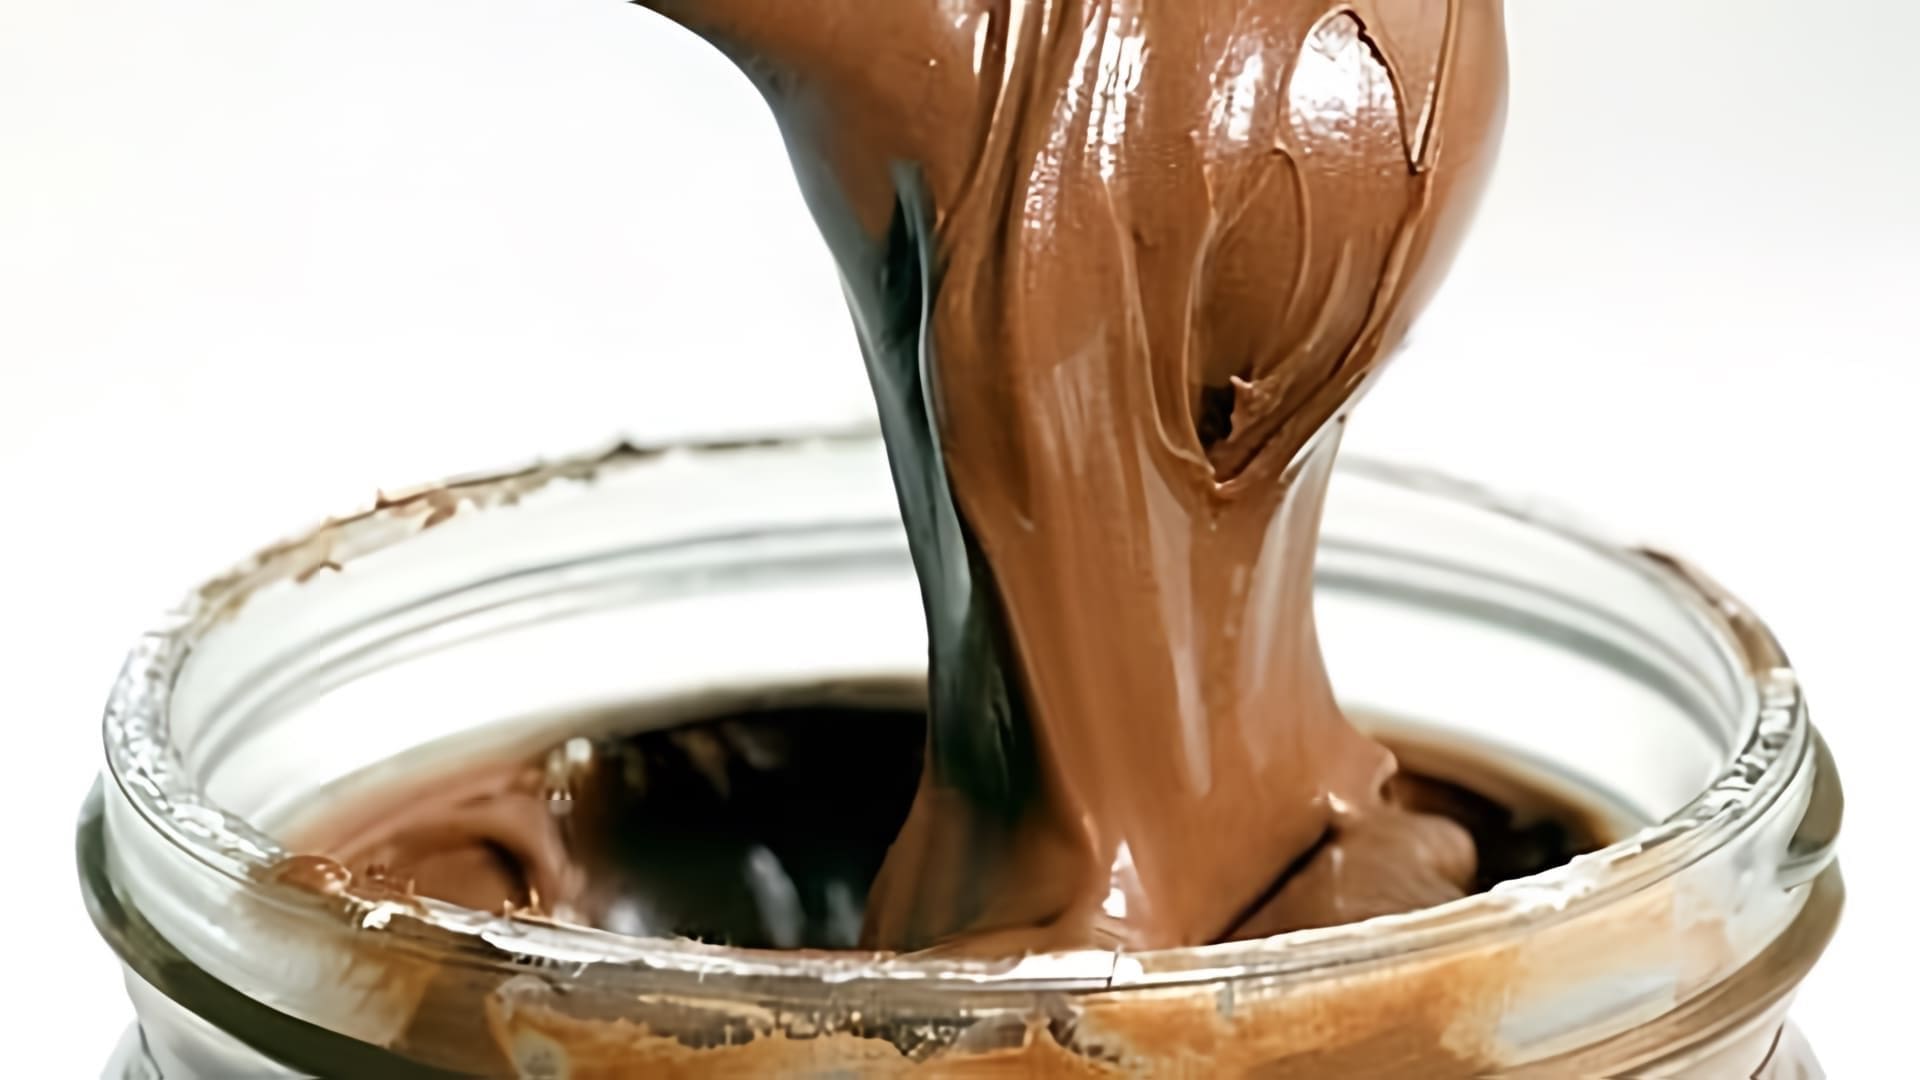 В этом видео демонстрируется процесс приготовления домашней шоколадно-ореховой пасты, которая по вкусу и консистенции напоминает Nutella